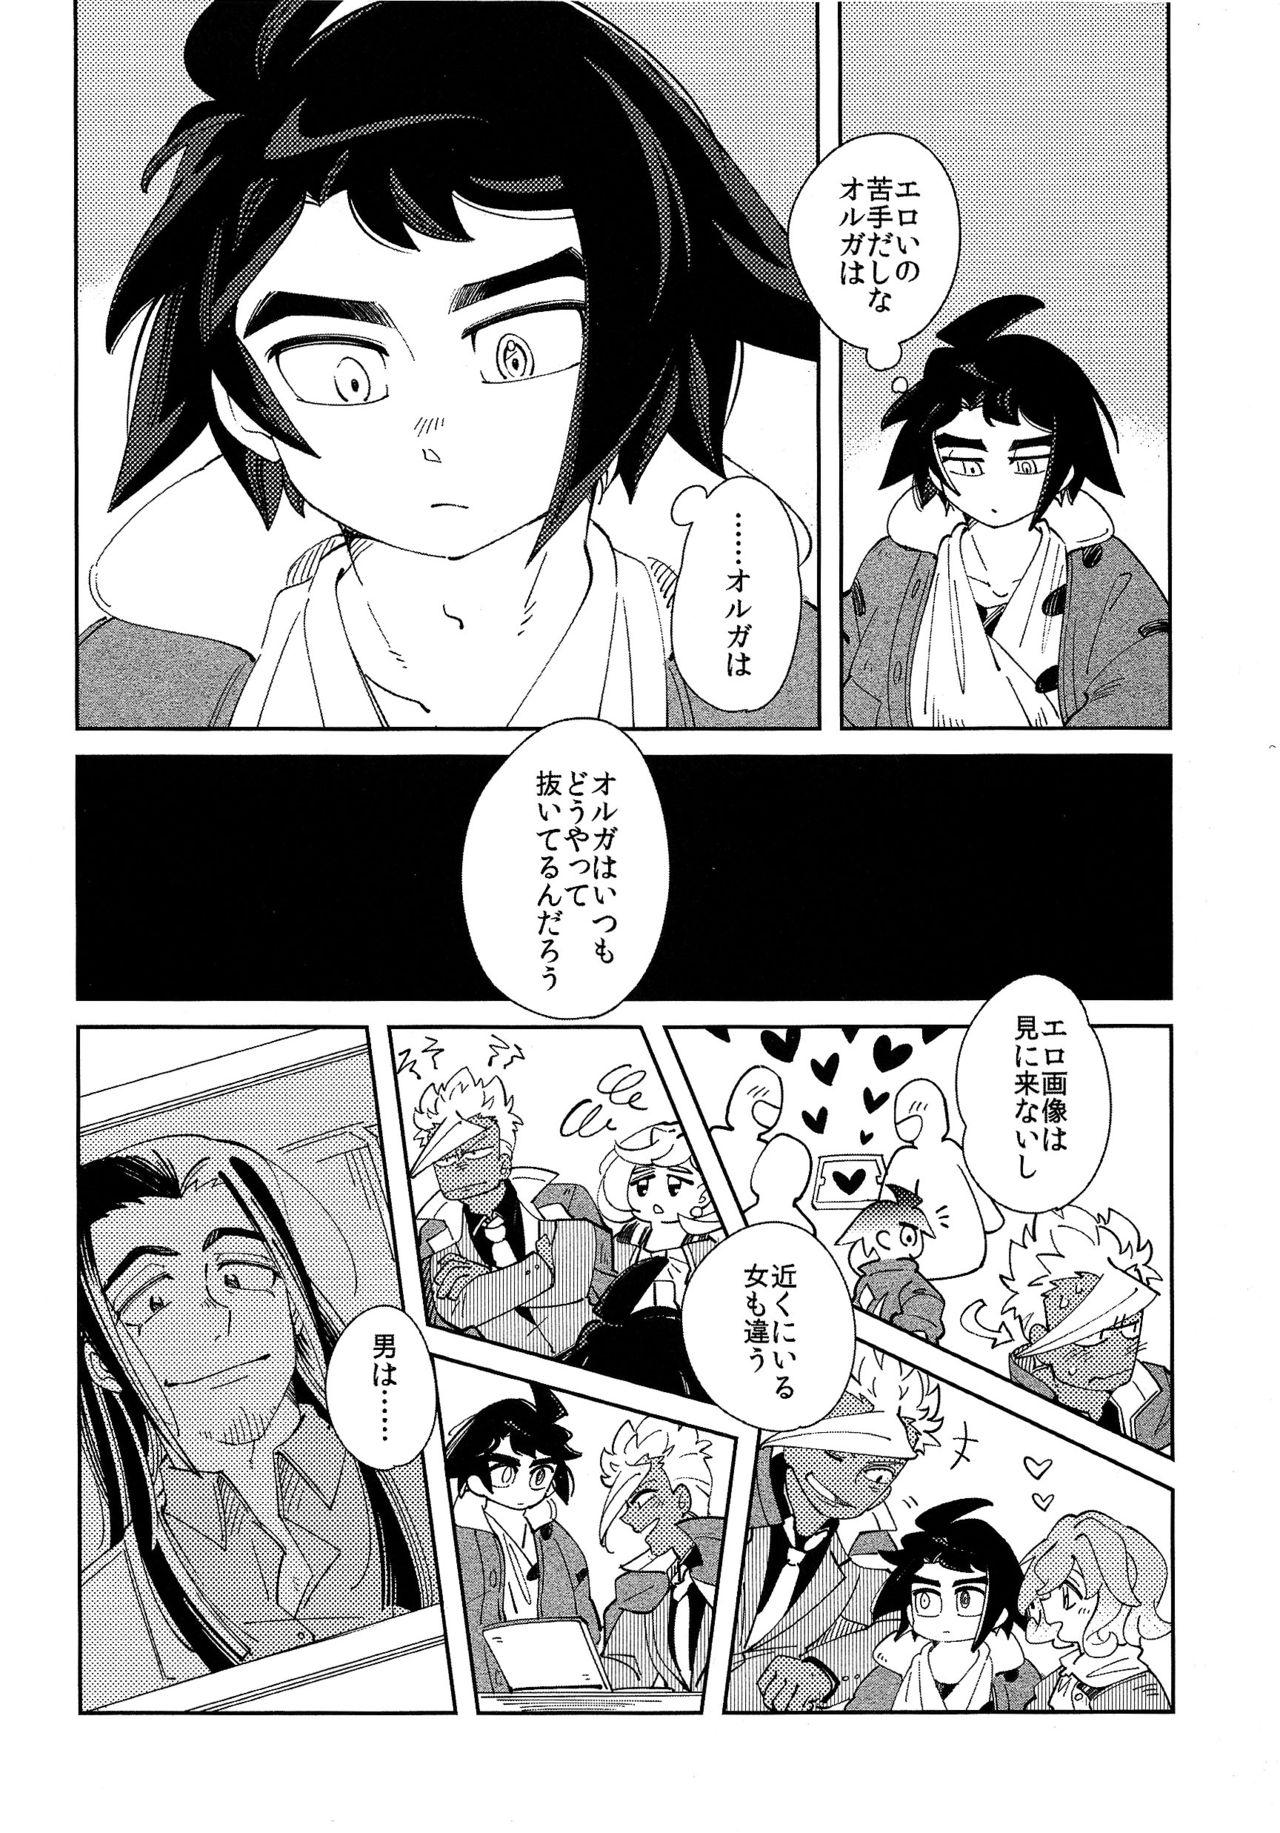 Women Fucking Moufu no Nakami wa? - Mobile suit gundam tekketsu no orphans Assfuck - Page 5